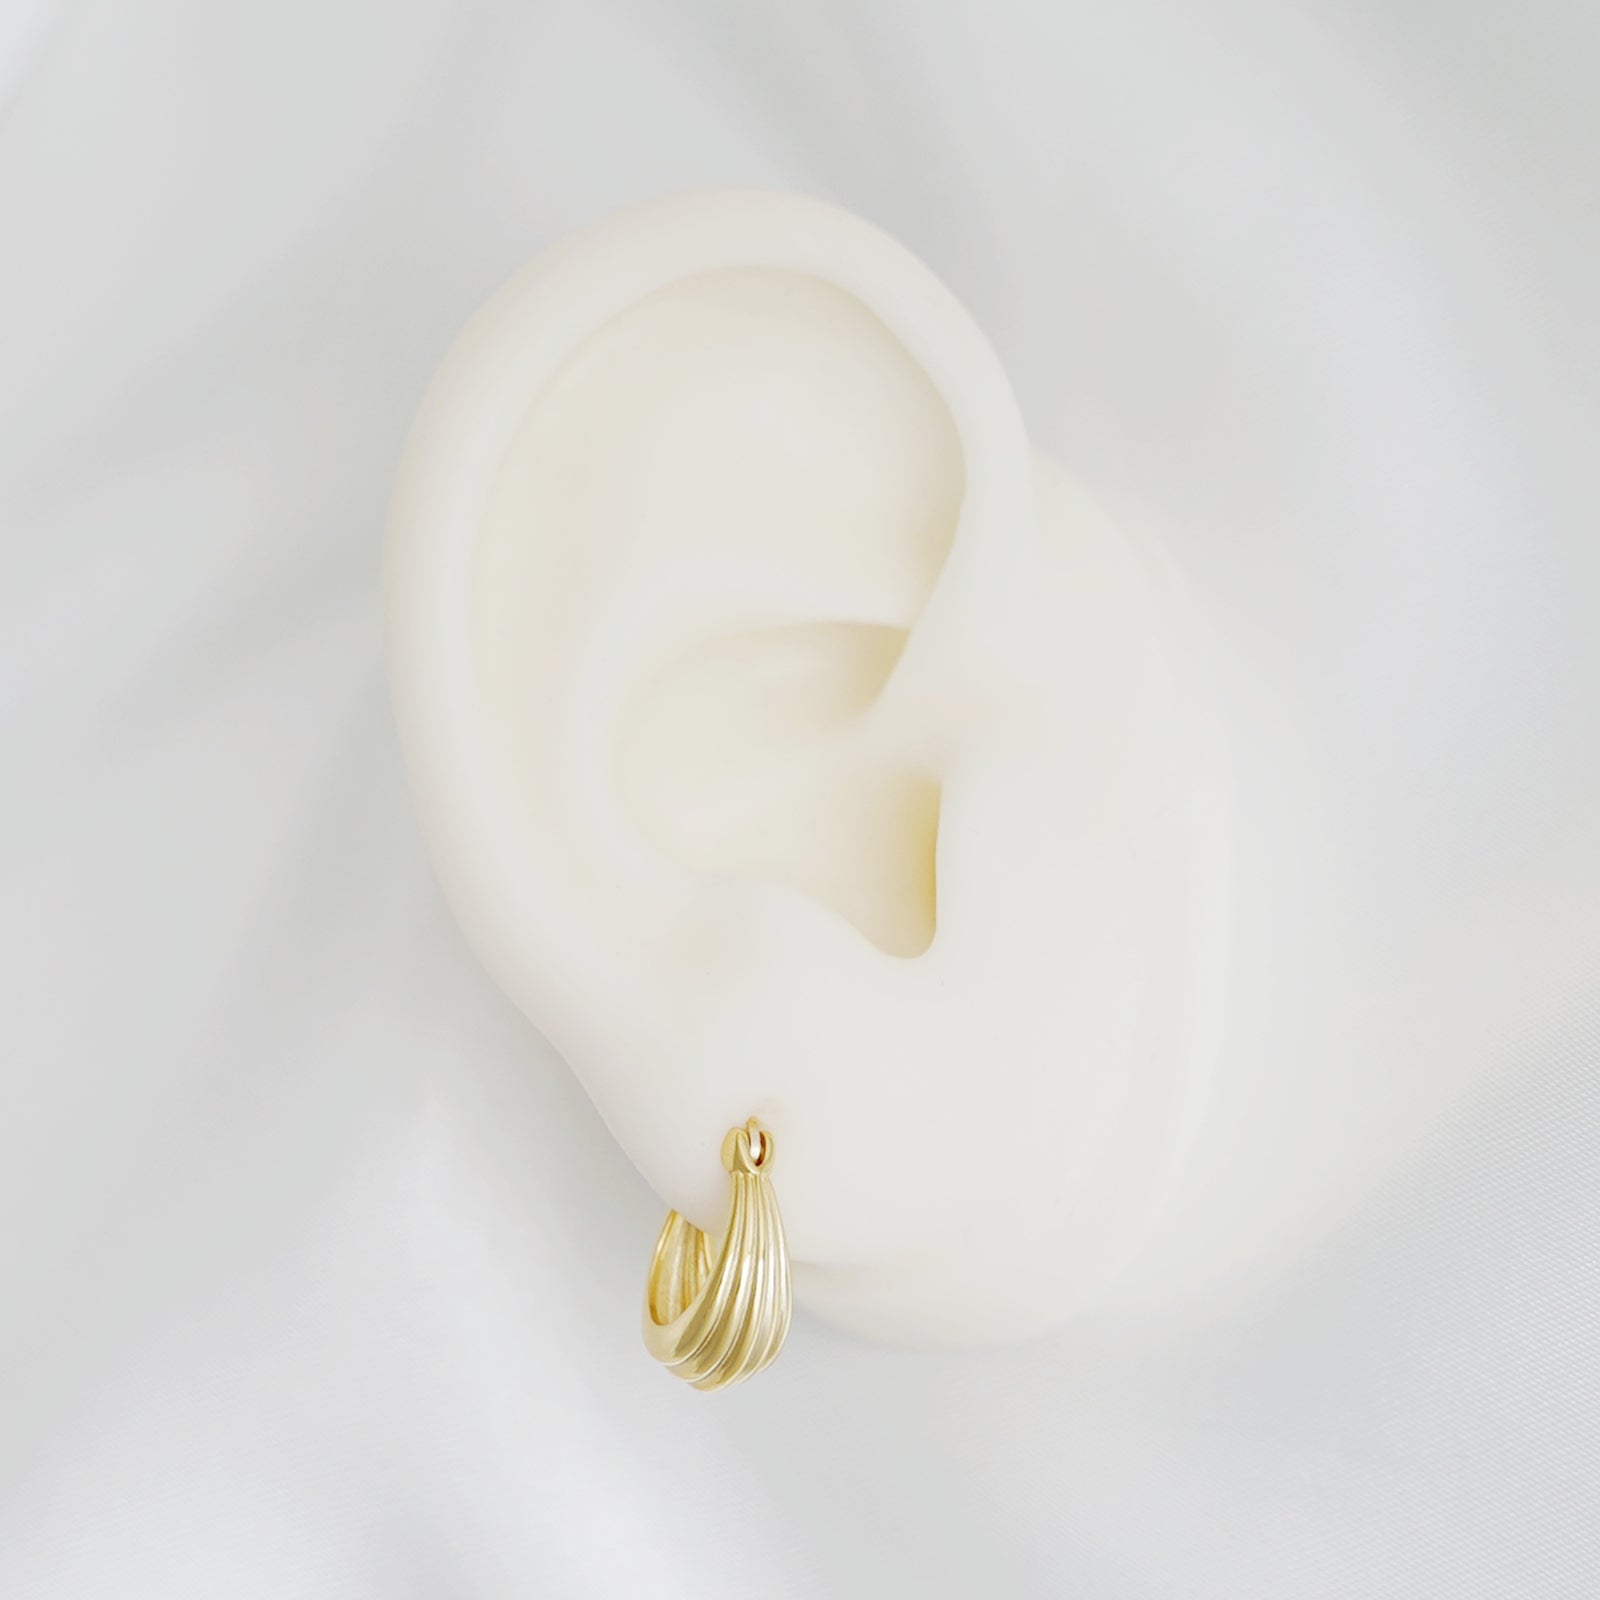 Sterling Silver Teardrop Hoop Earrings with Hinged French Lock Closure - 2 Tones - sugarkittenlondon